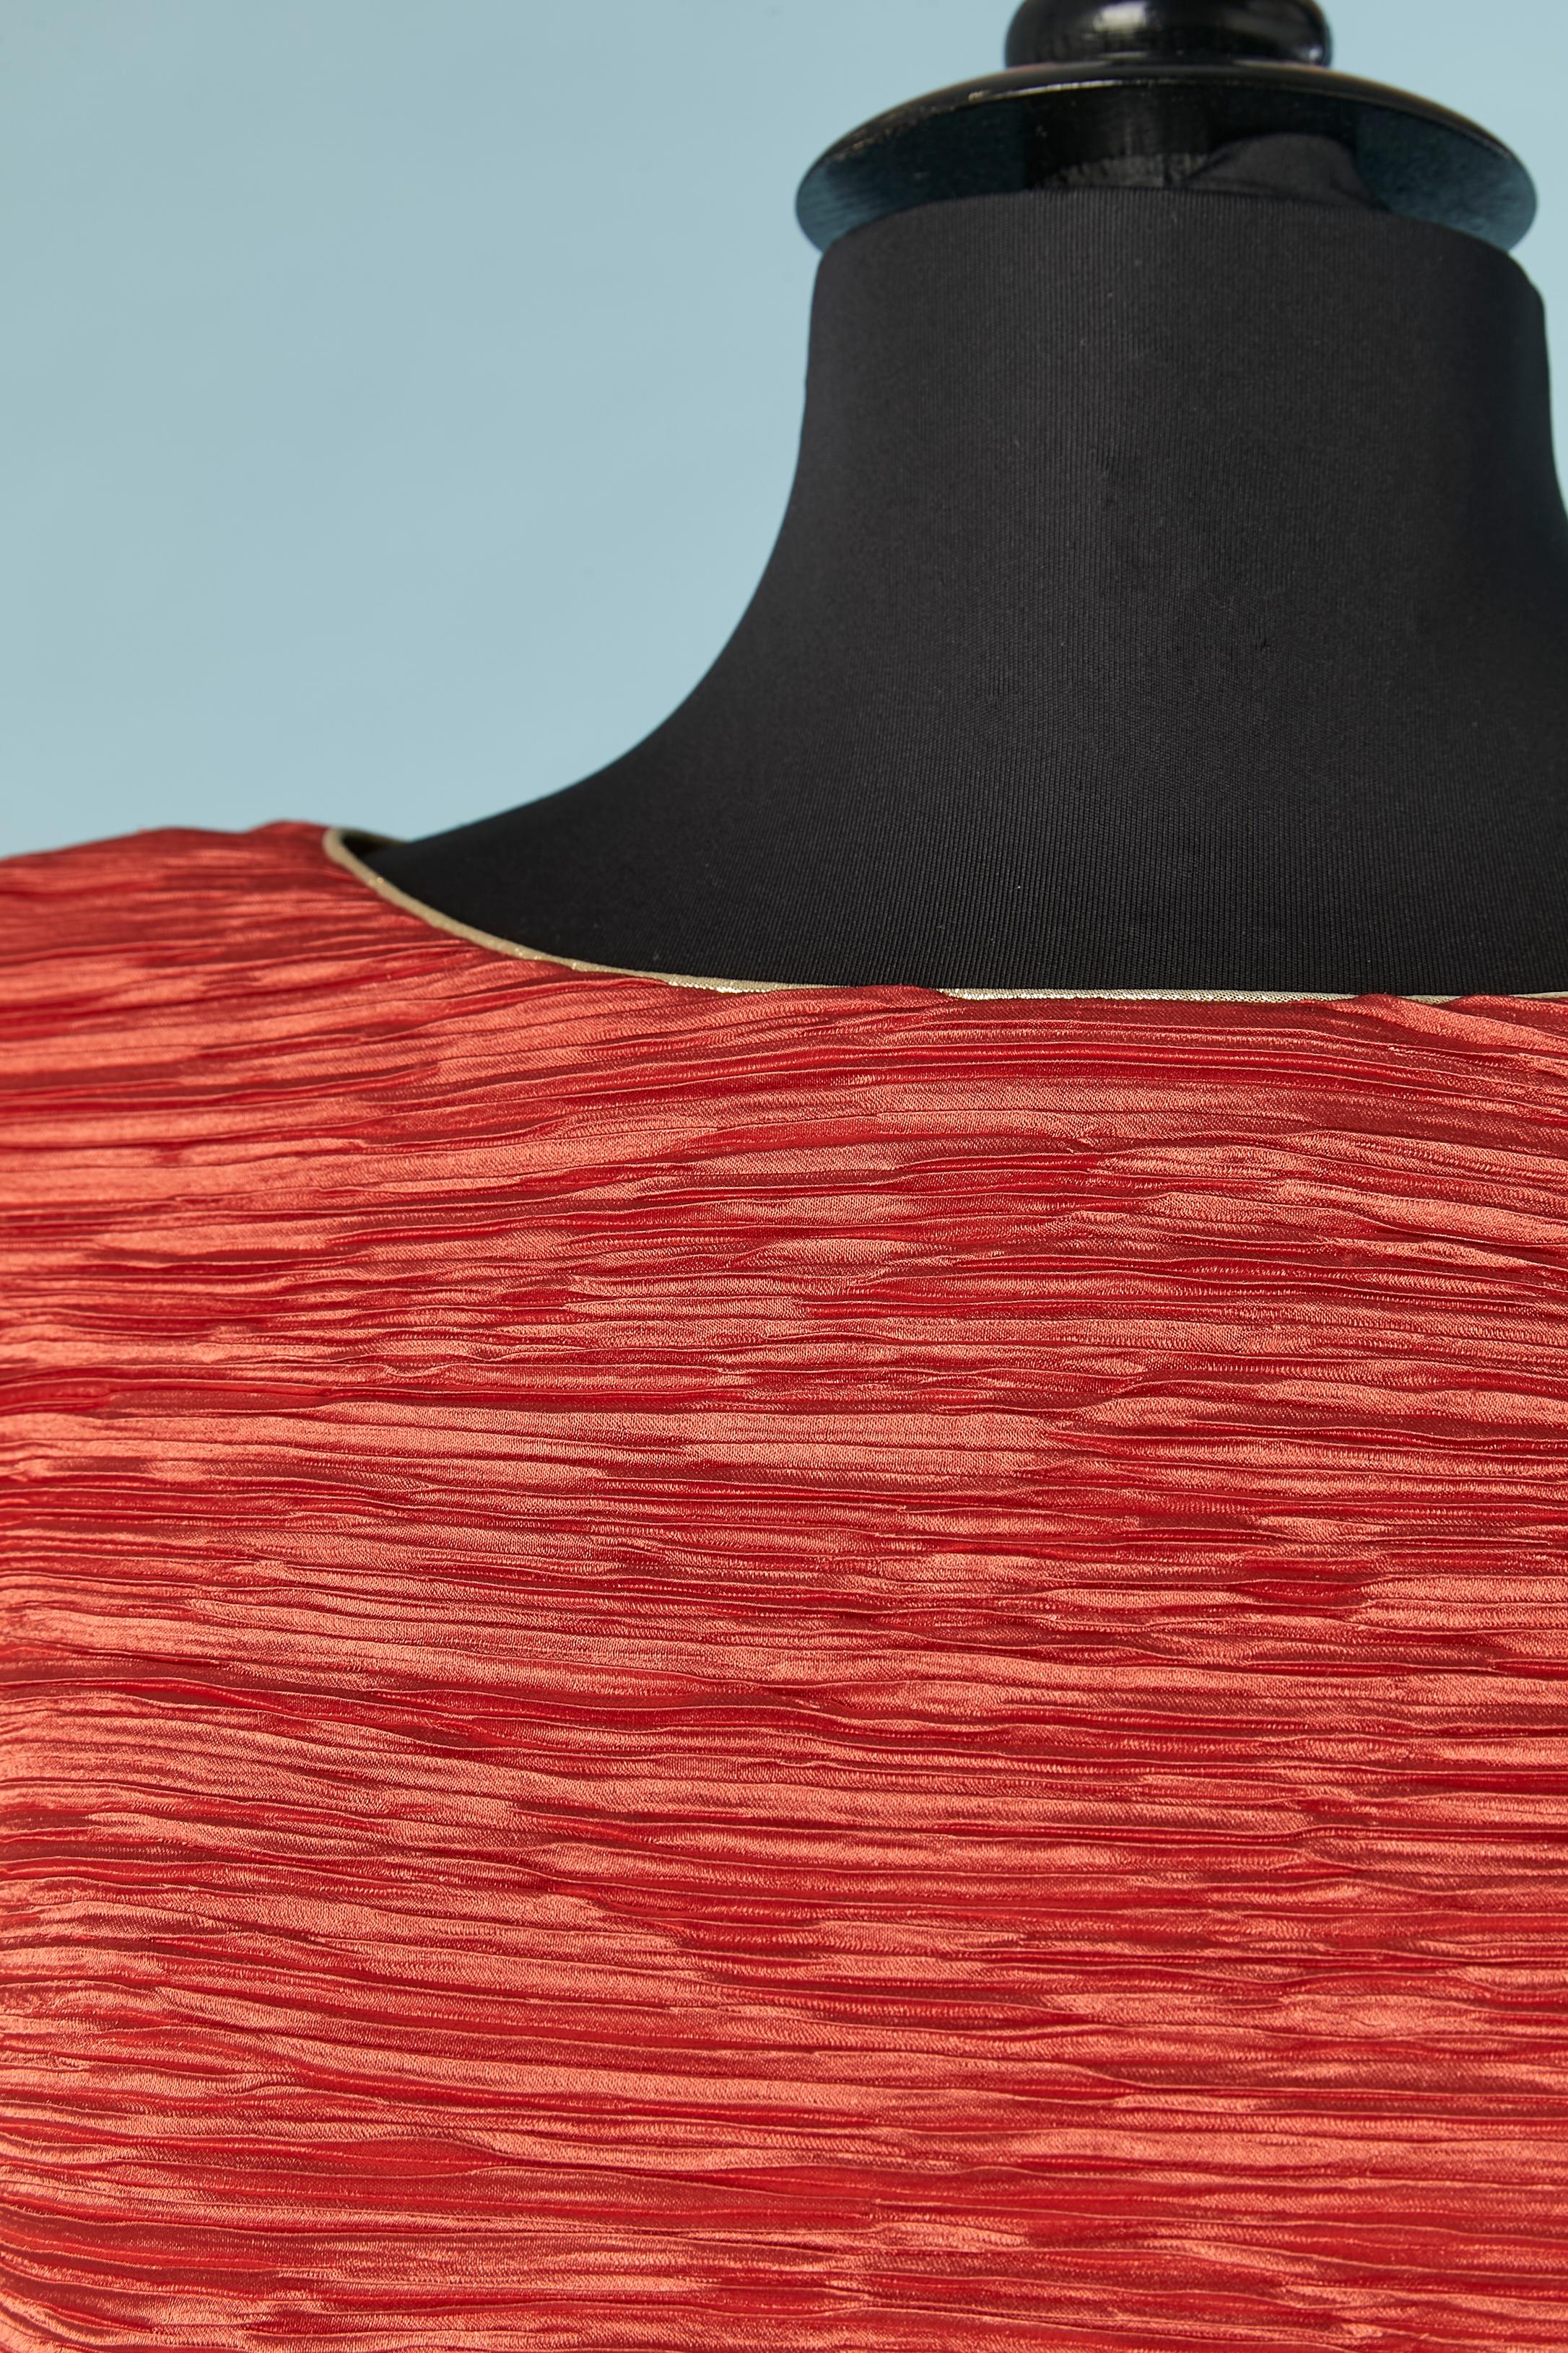 Robe du soir en satin rouge avec plis fins et passepoils en lamé or. Pas d'étiquette de marque mais le créateur est 